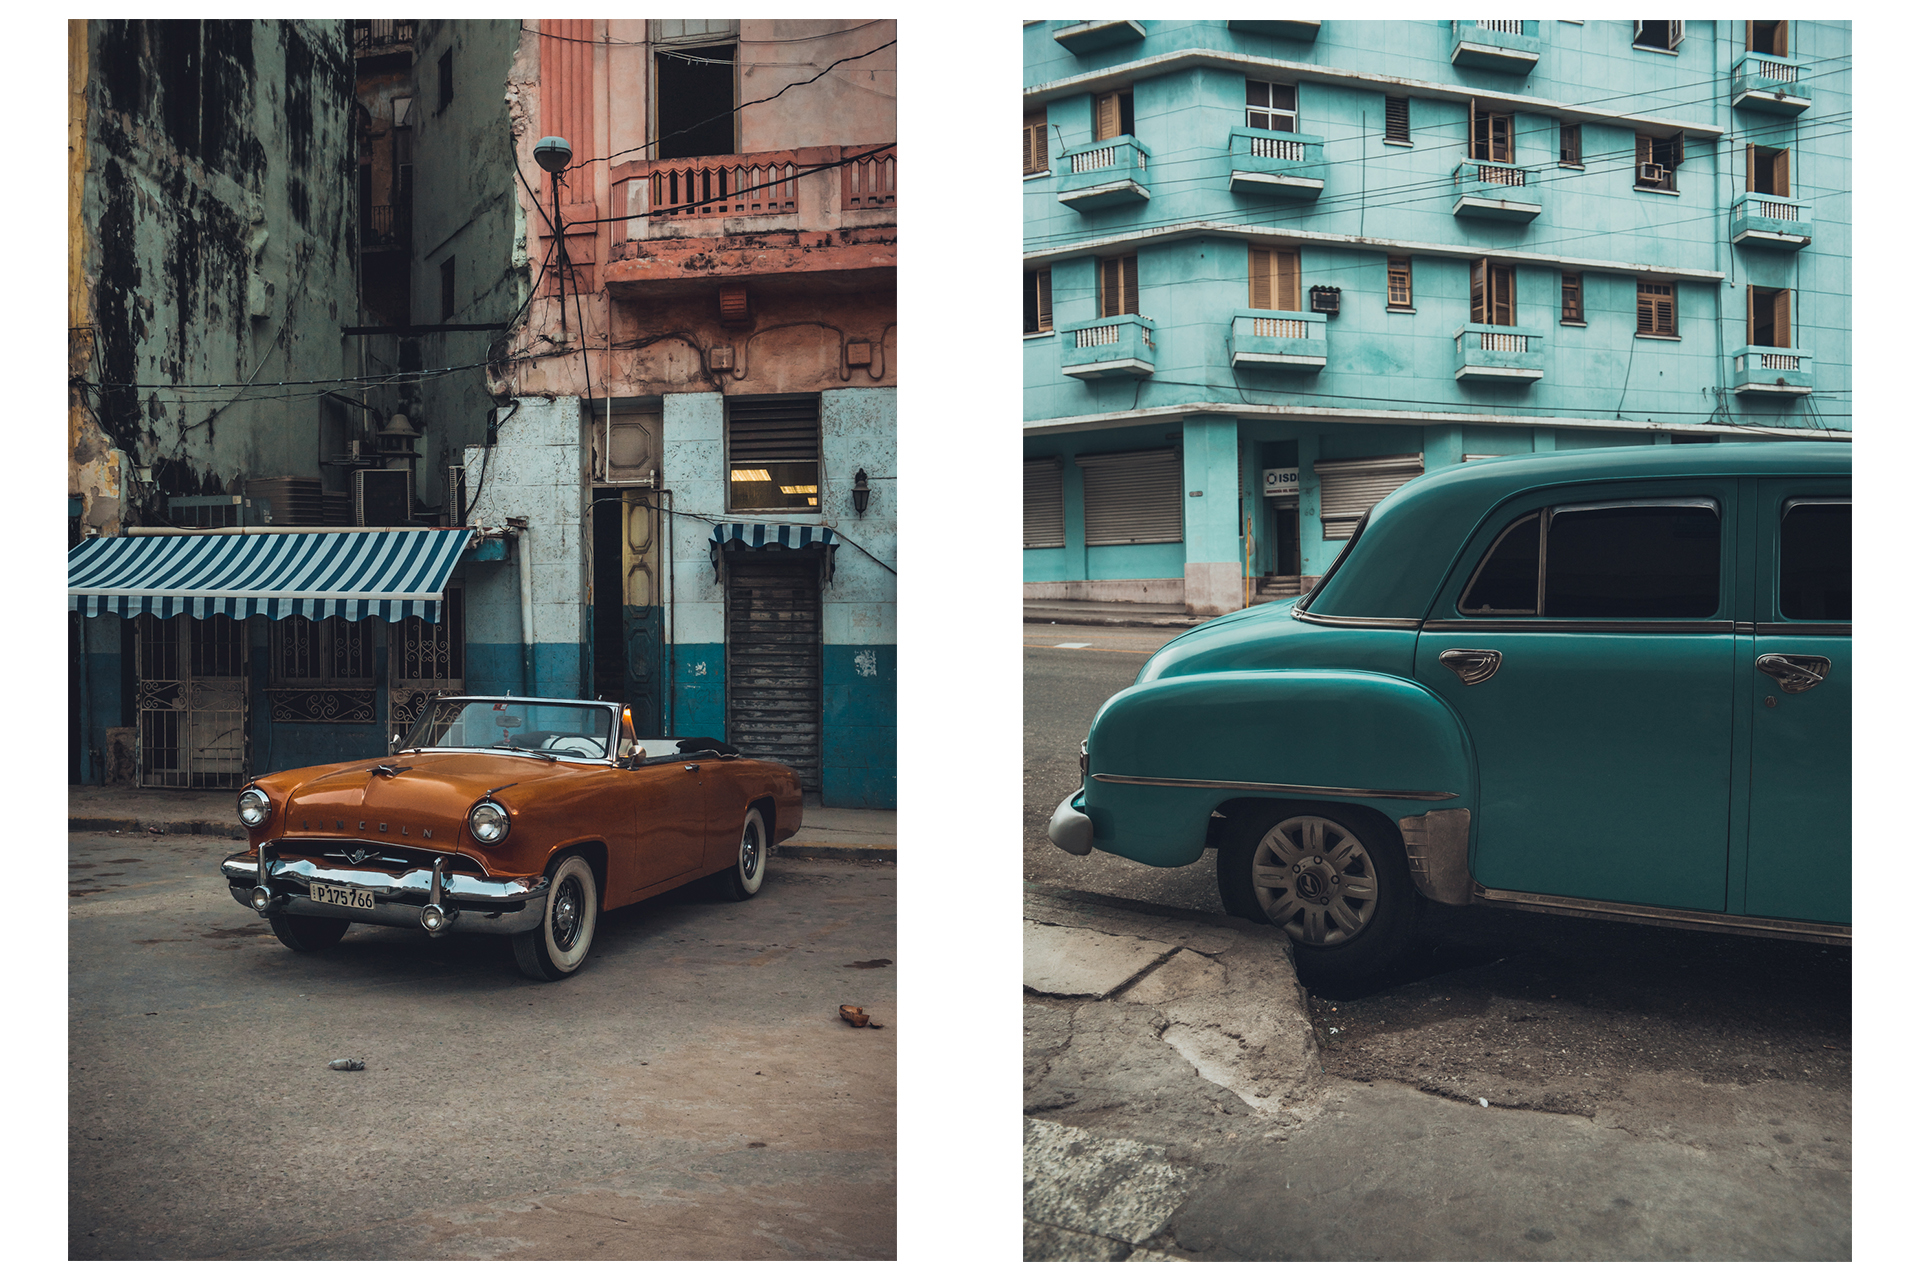 Cinematic Cuba Series by Stijn Hoekstra